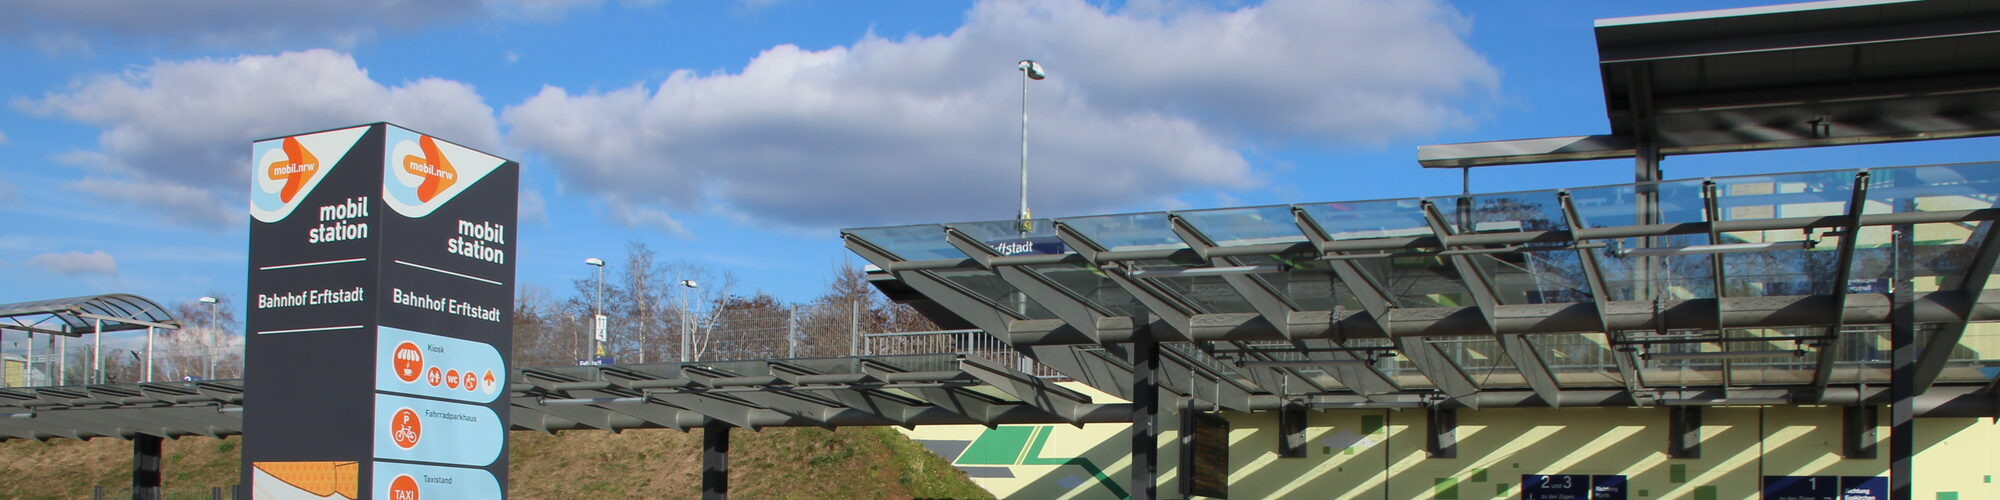 Bahnhof Erftstadt: Reisende finden ein vielfältiges Angebot.